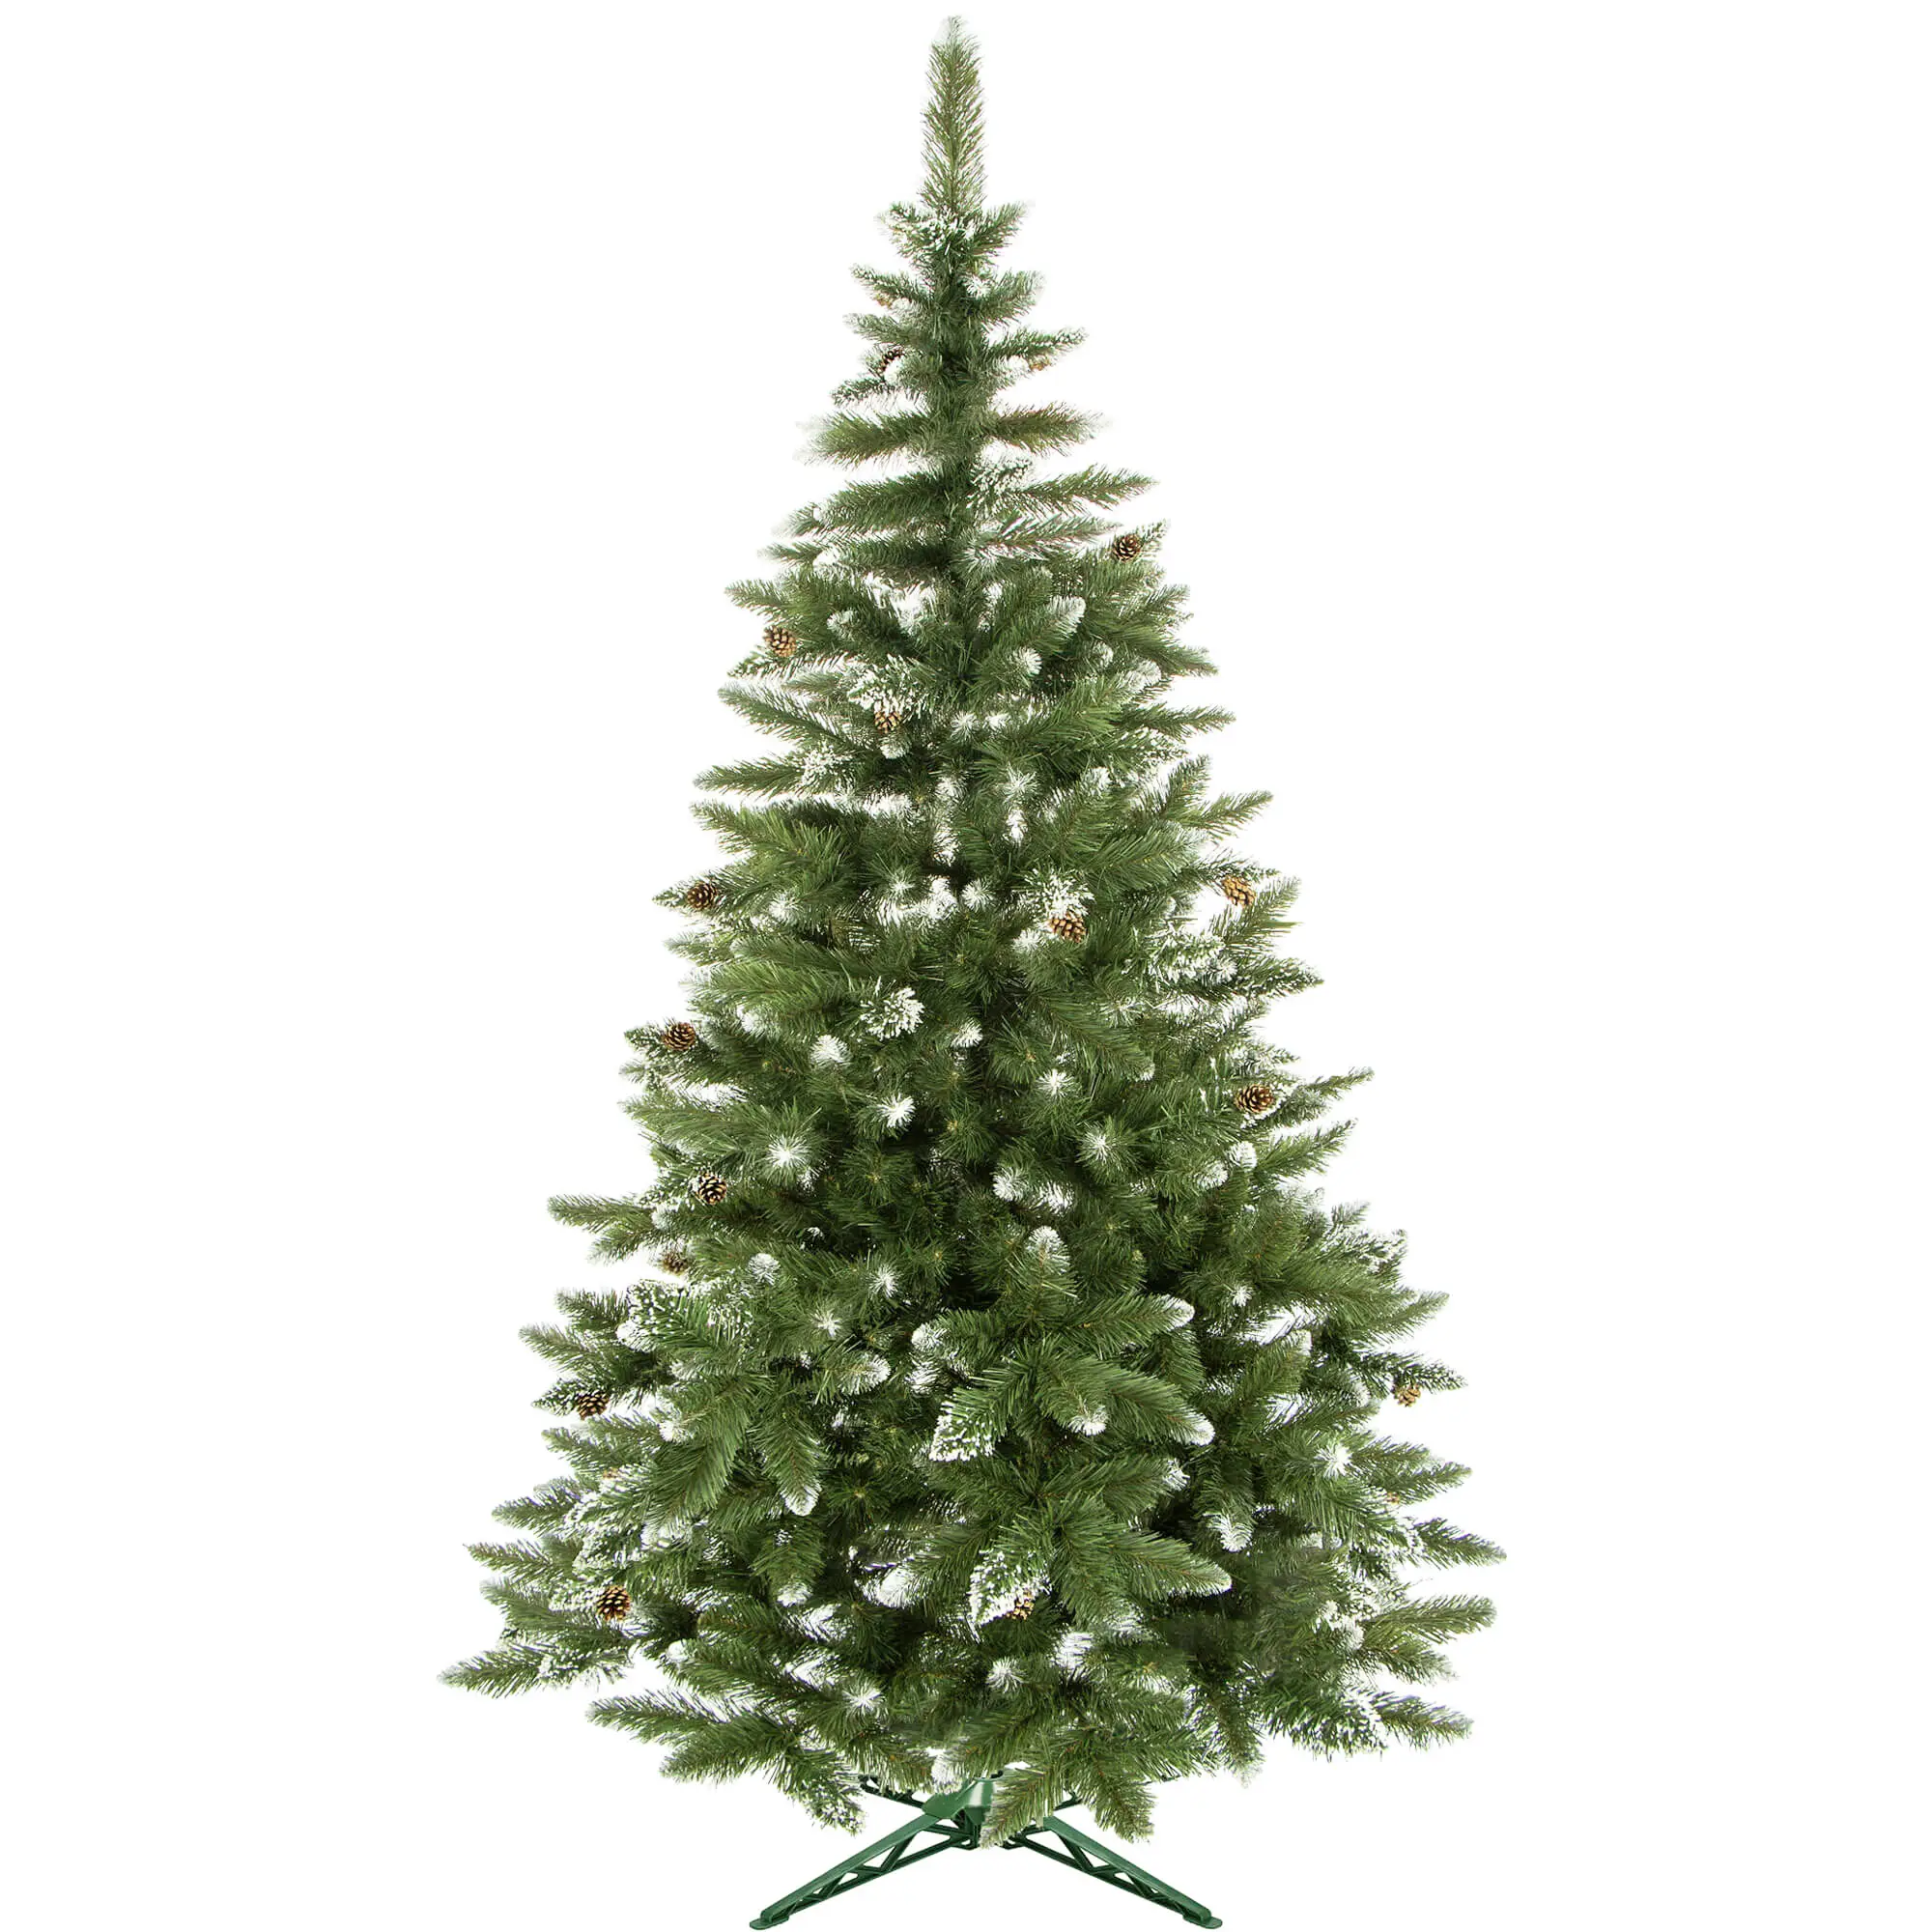 K眉nstlicher Premium-Weihnachtsbaum